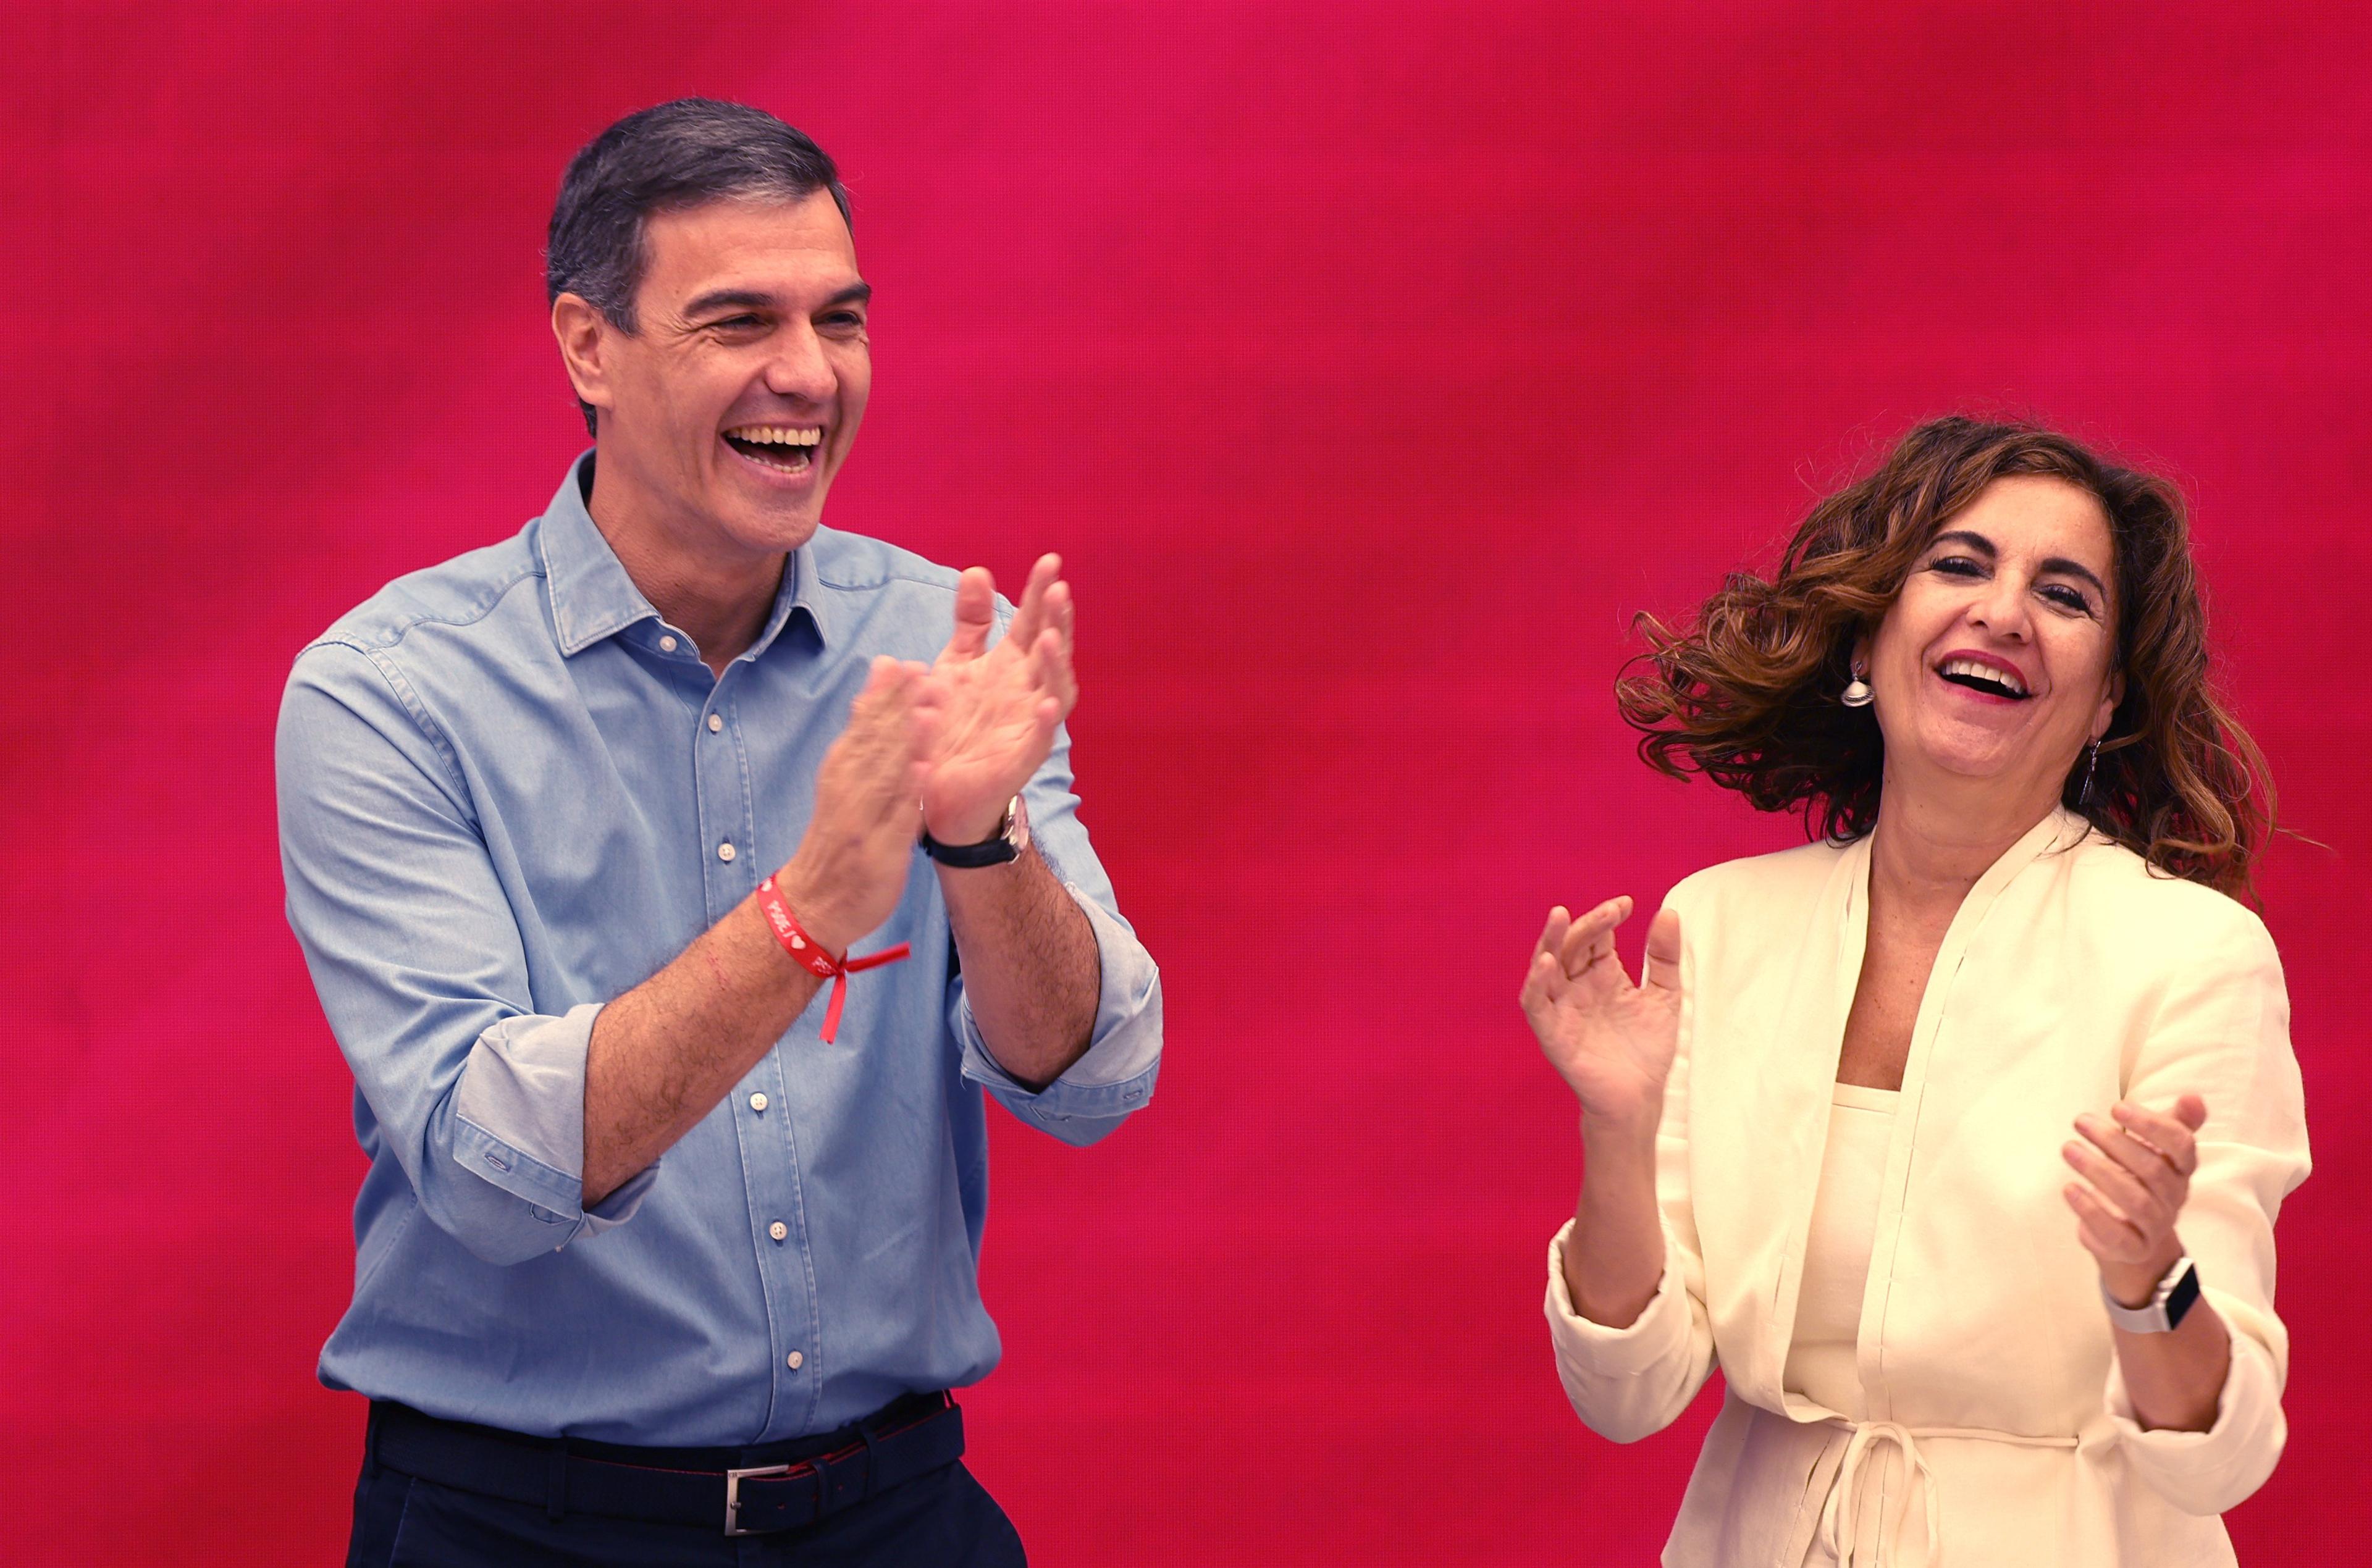 Mężczyzna i kobieta tańczą i śmieją się na czerwonym tle